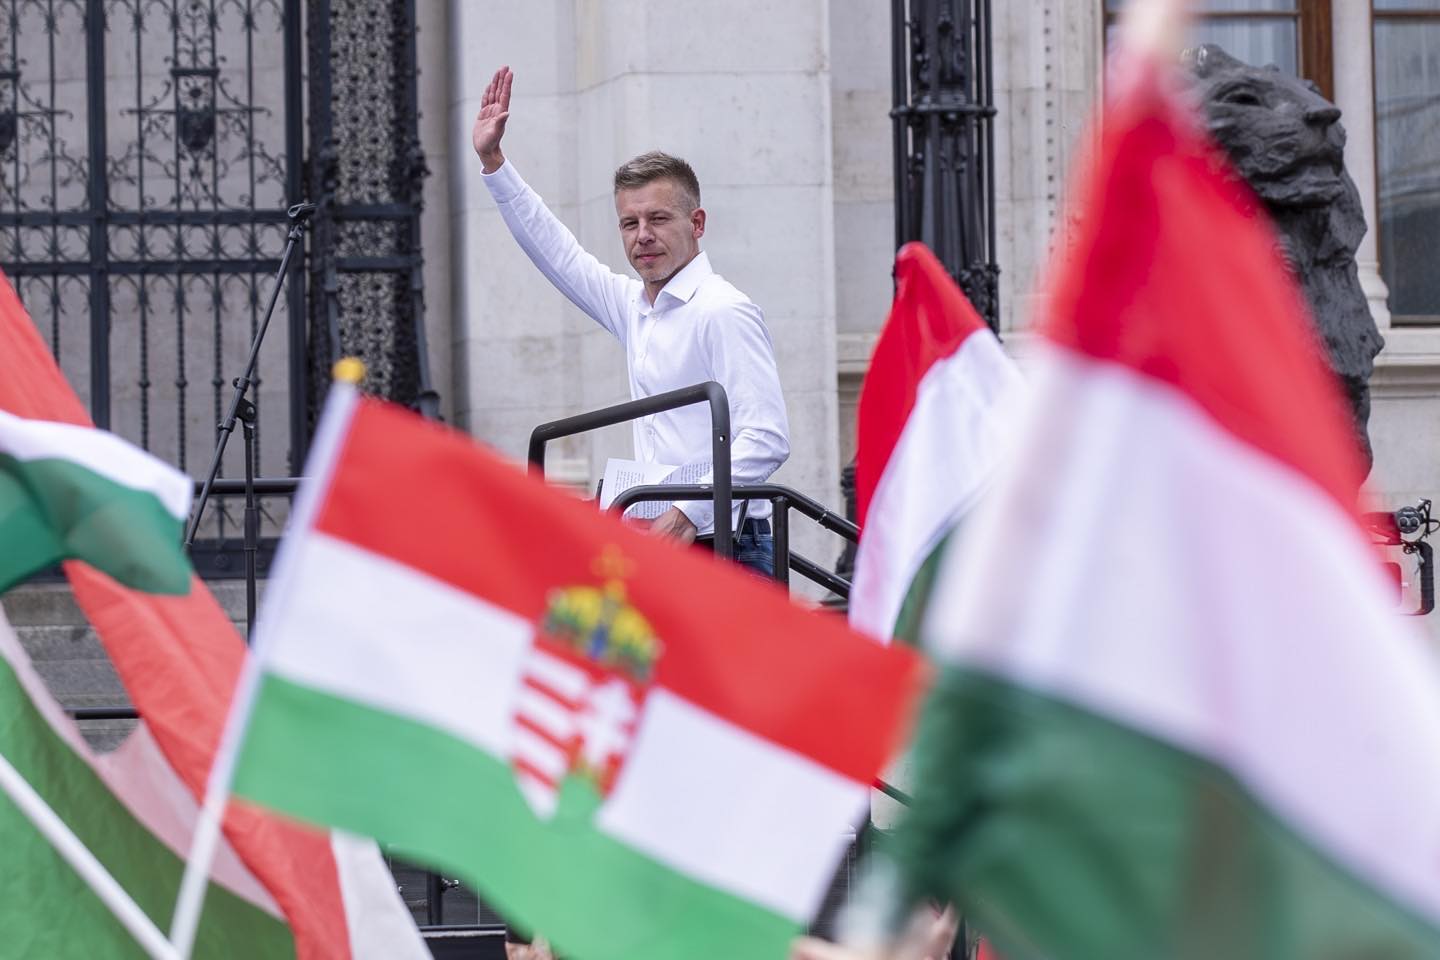 Kutatás: Magyar Péter minden ellenzéki pártot lesöpört az útból